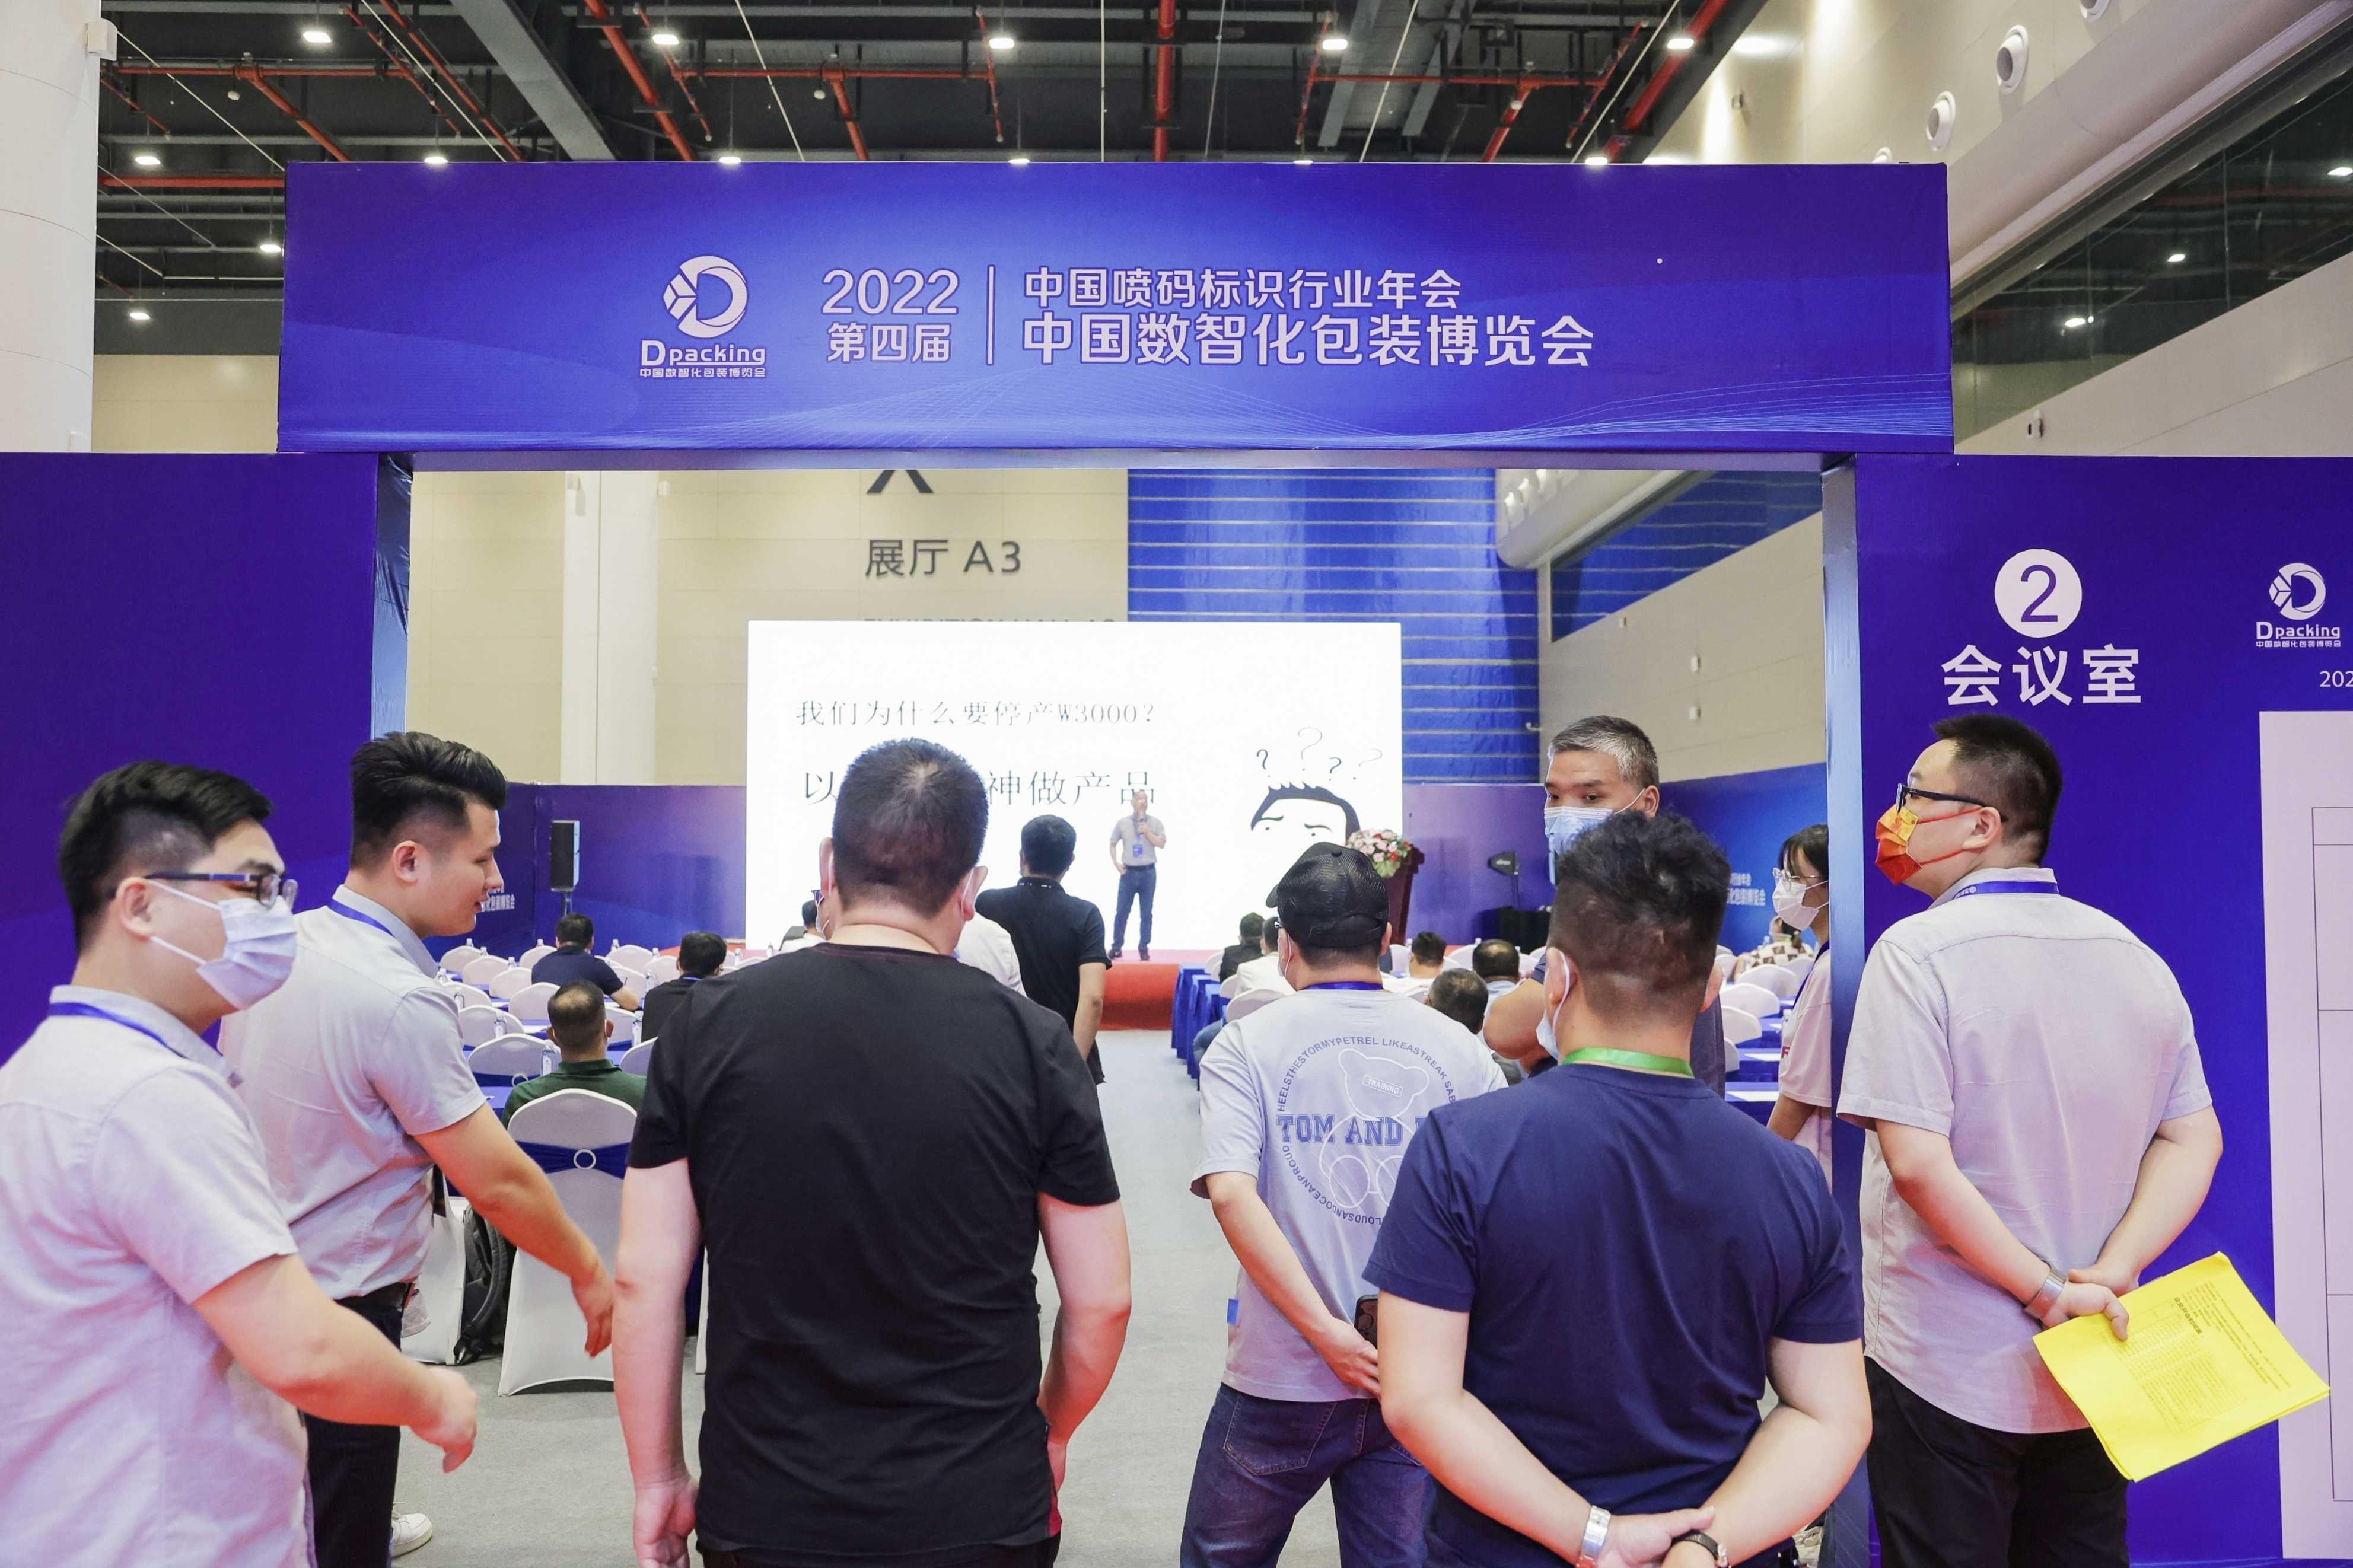 2022年中国数智化包装博览会暨第四届中国喷码标识行业年会